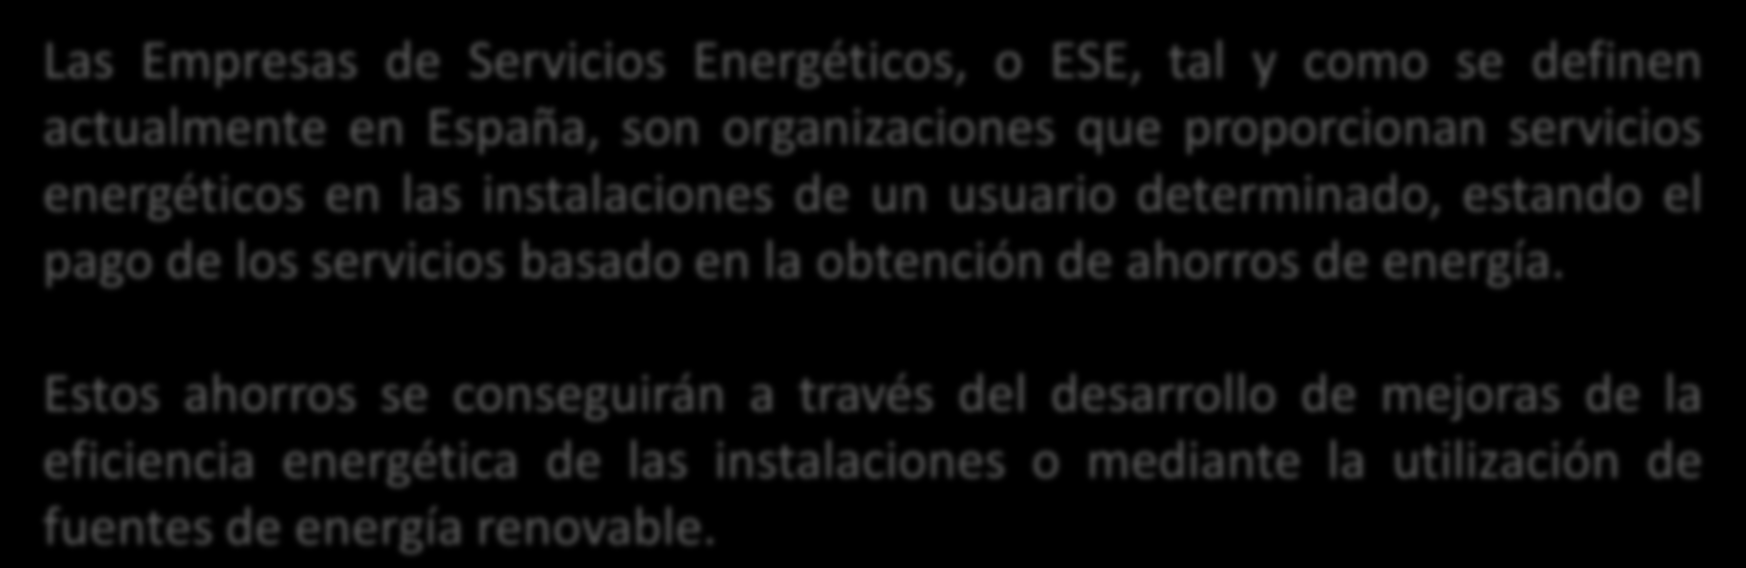 Las Empresas de Servicios Energéticos, o ESE, tal y como se definen actualmente en España, son organizaciones que proporcionan servicios energéticos en las instalaciones de un usuario determinado,